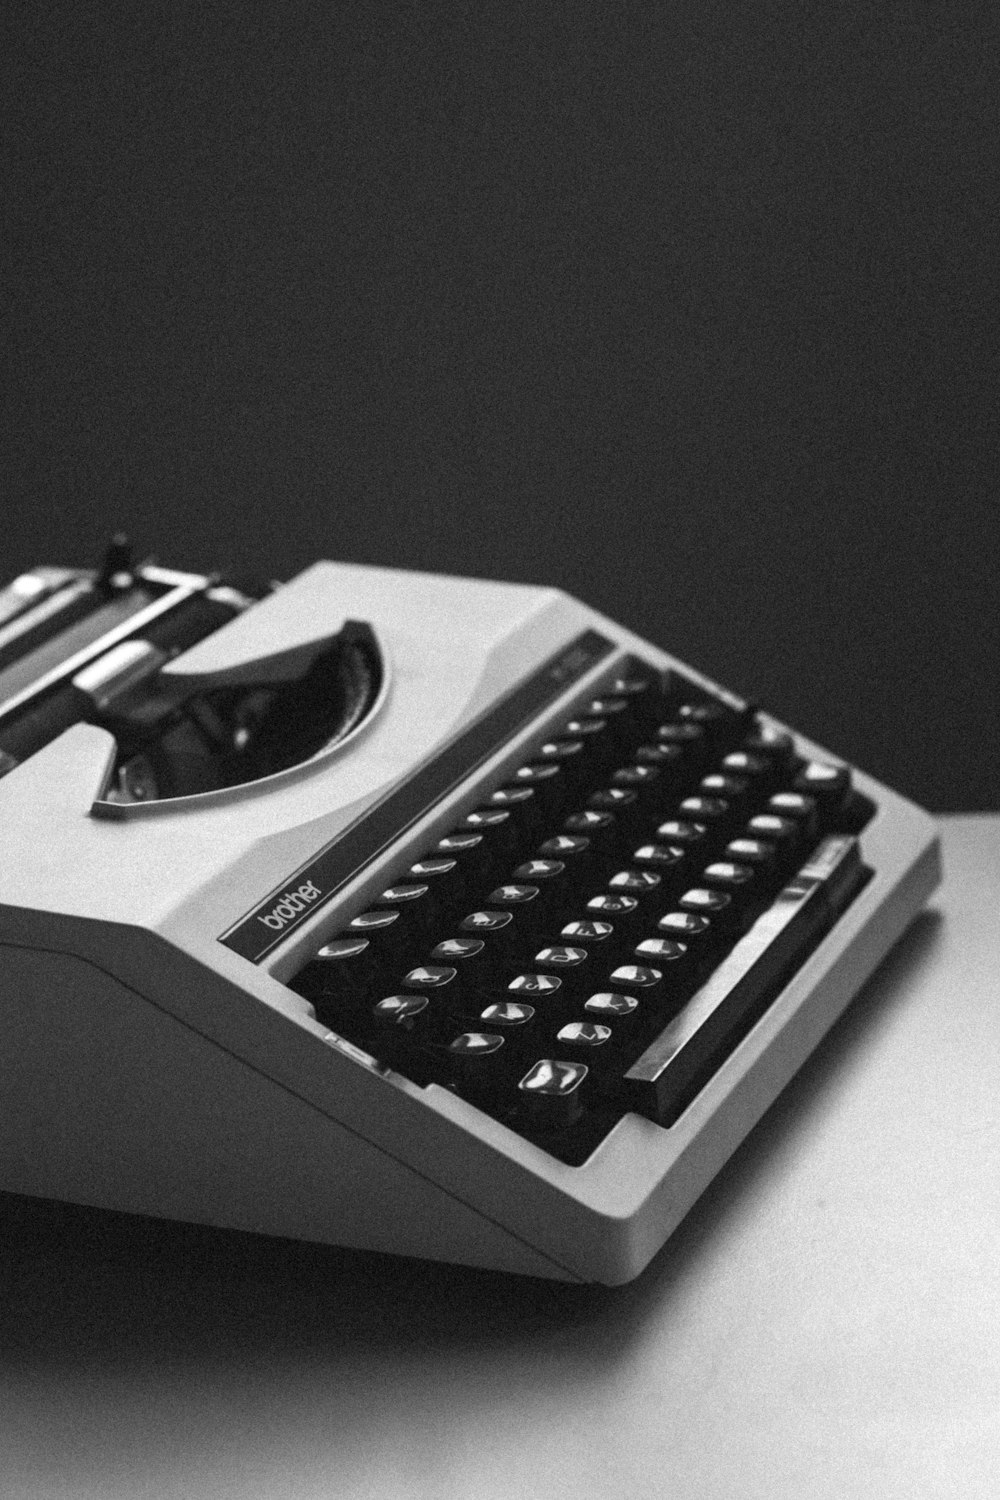 fotografia em close-up de máquina de escrever branca e preta